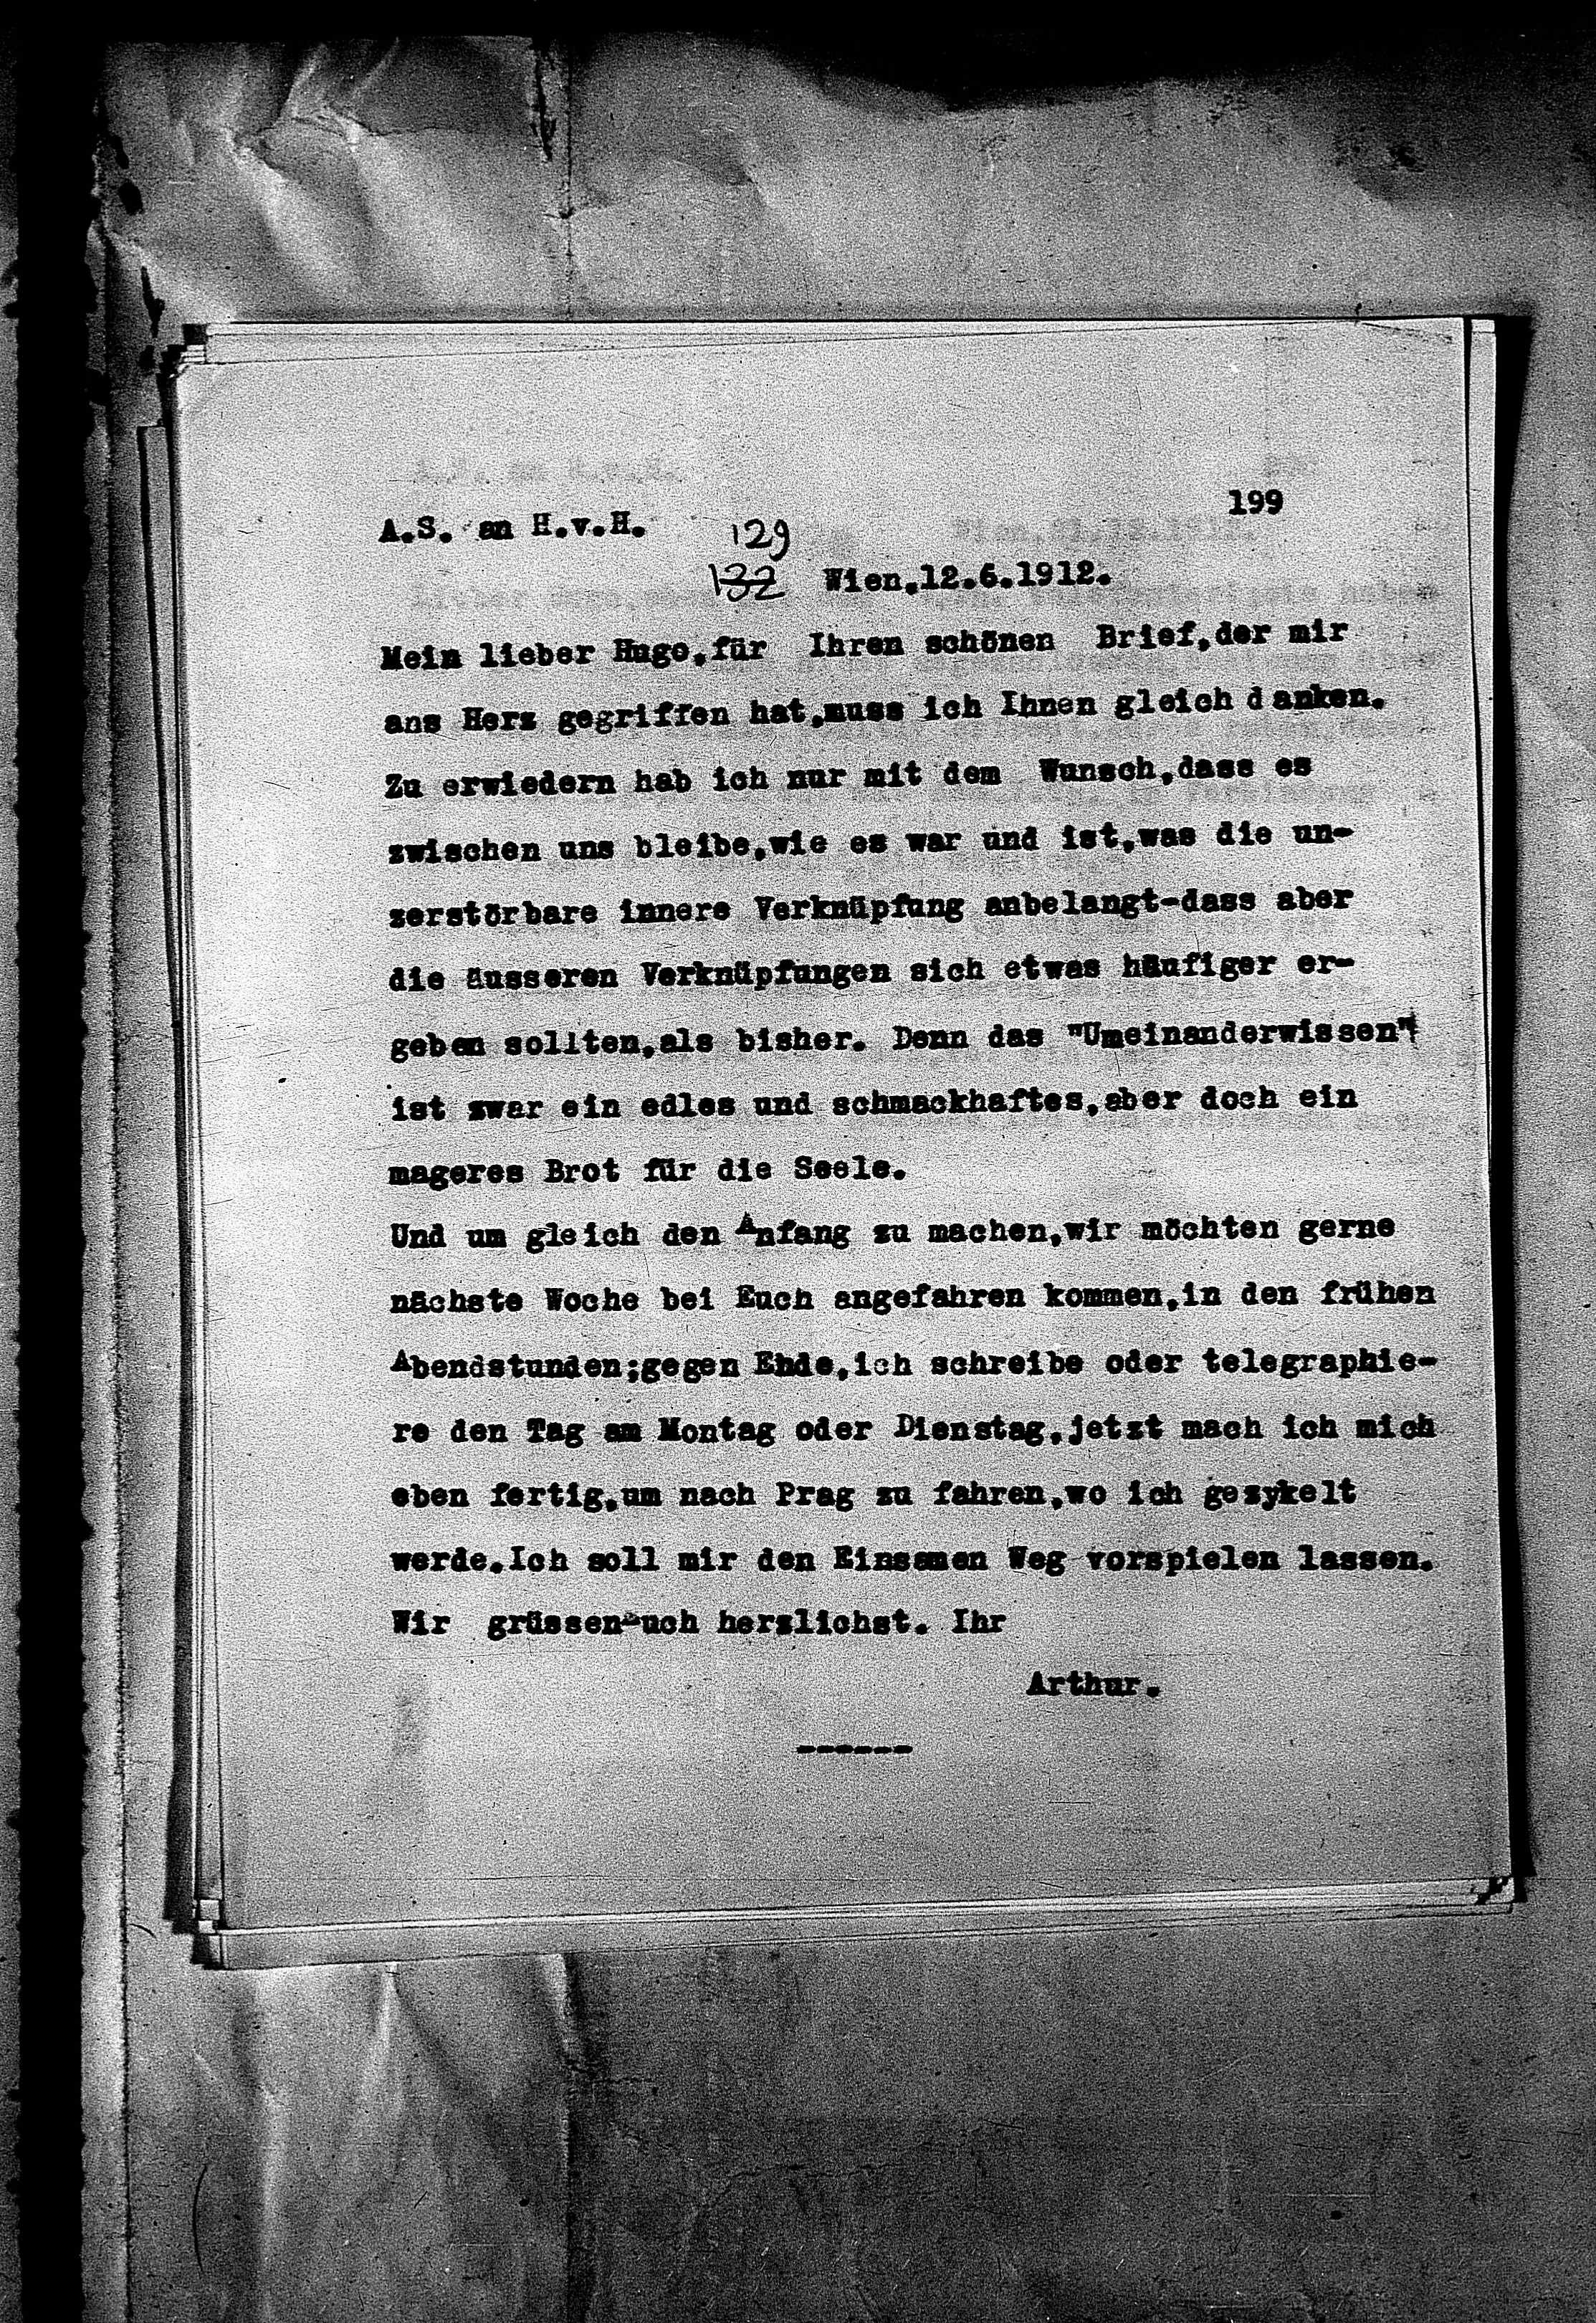 Vorschaubild für Hofmannsthal, Hugo von_AS an HvH Abschrift, HvH an AS, Originale (Mikrofilm 38), Seite 205